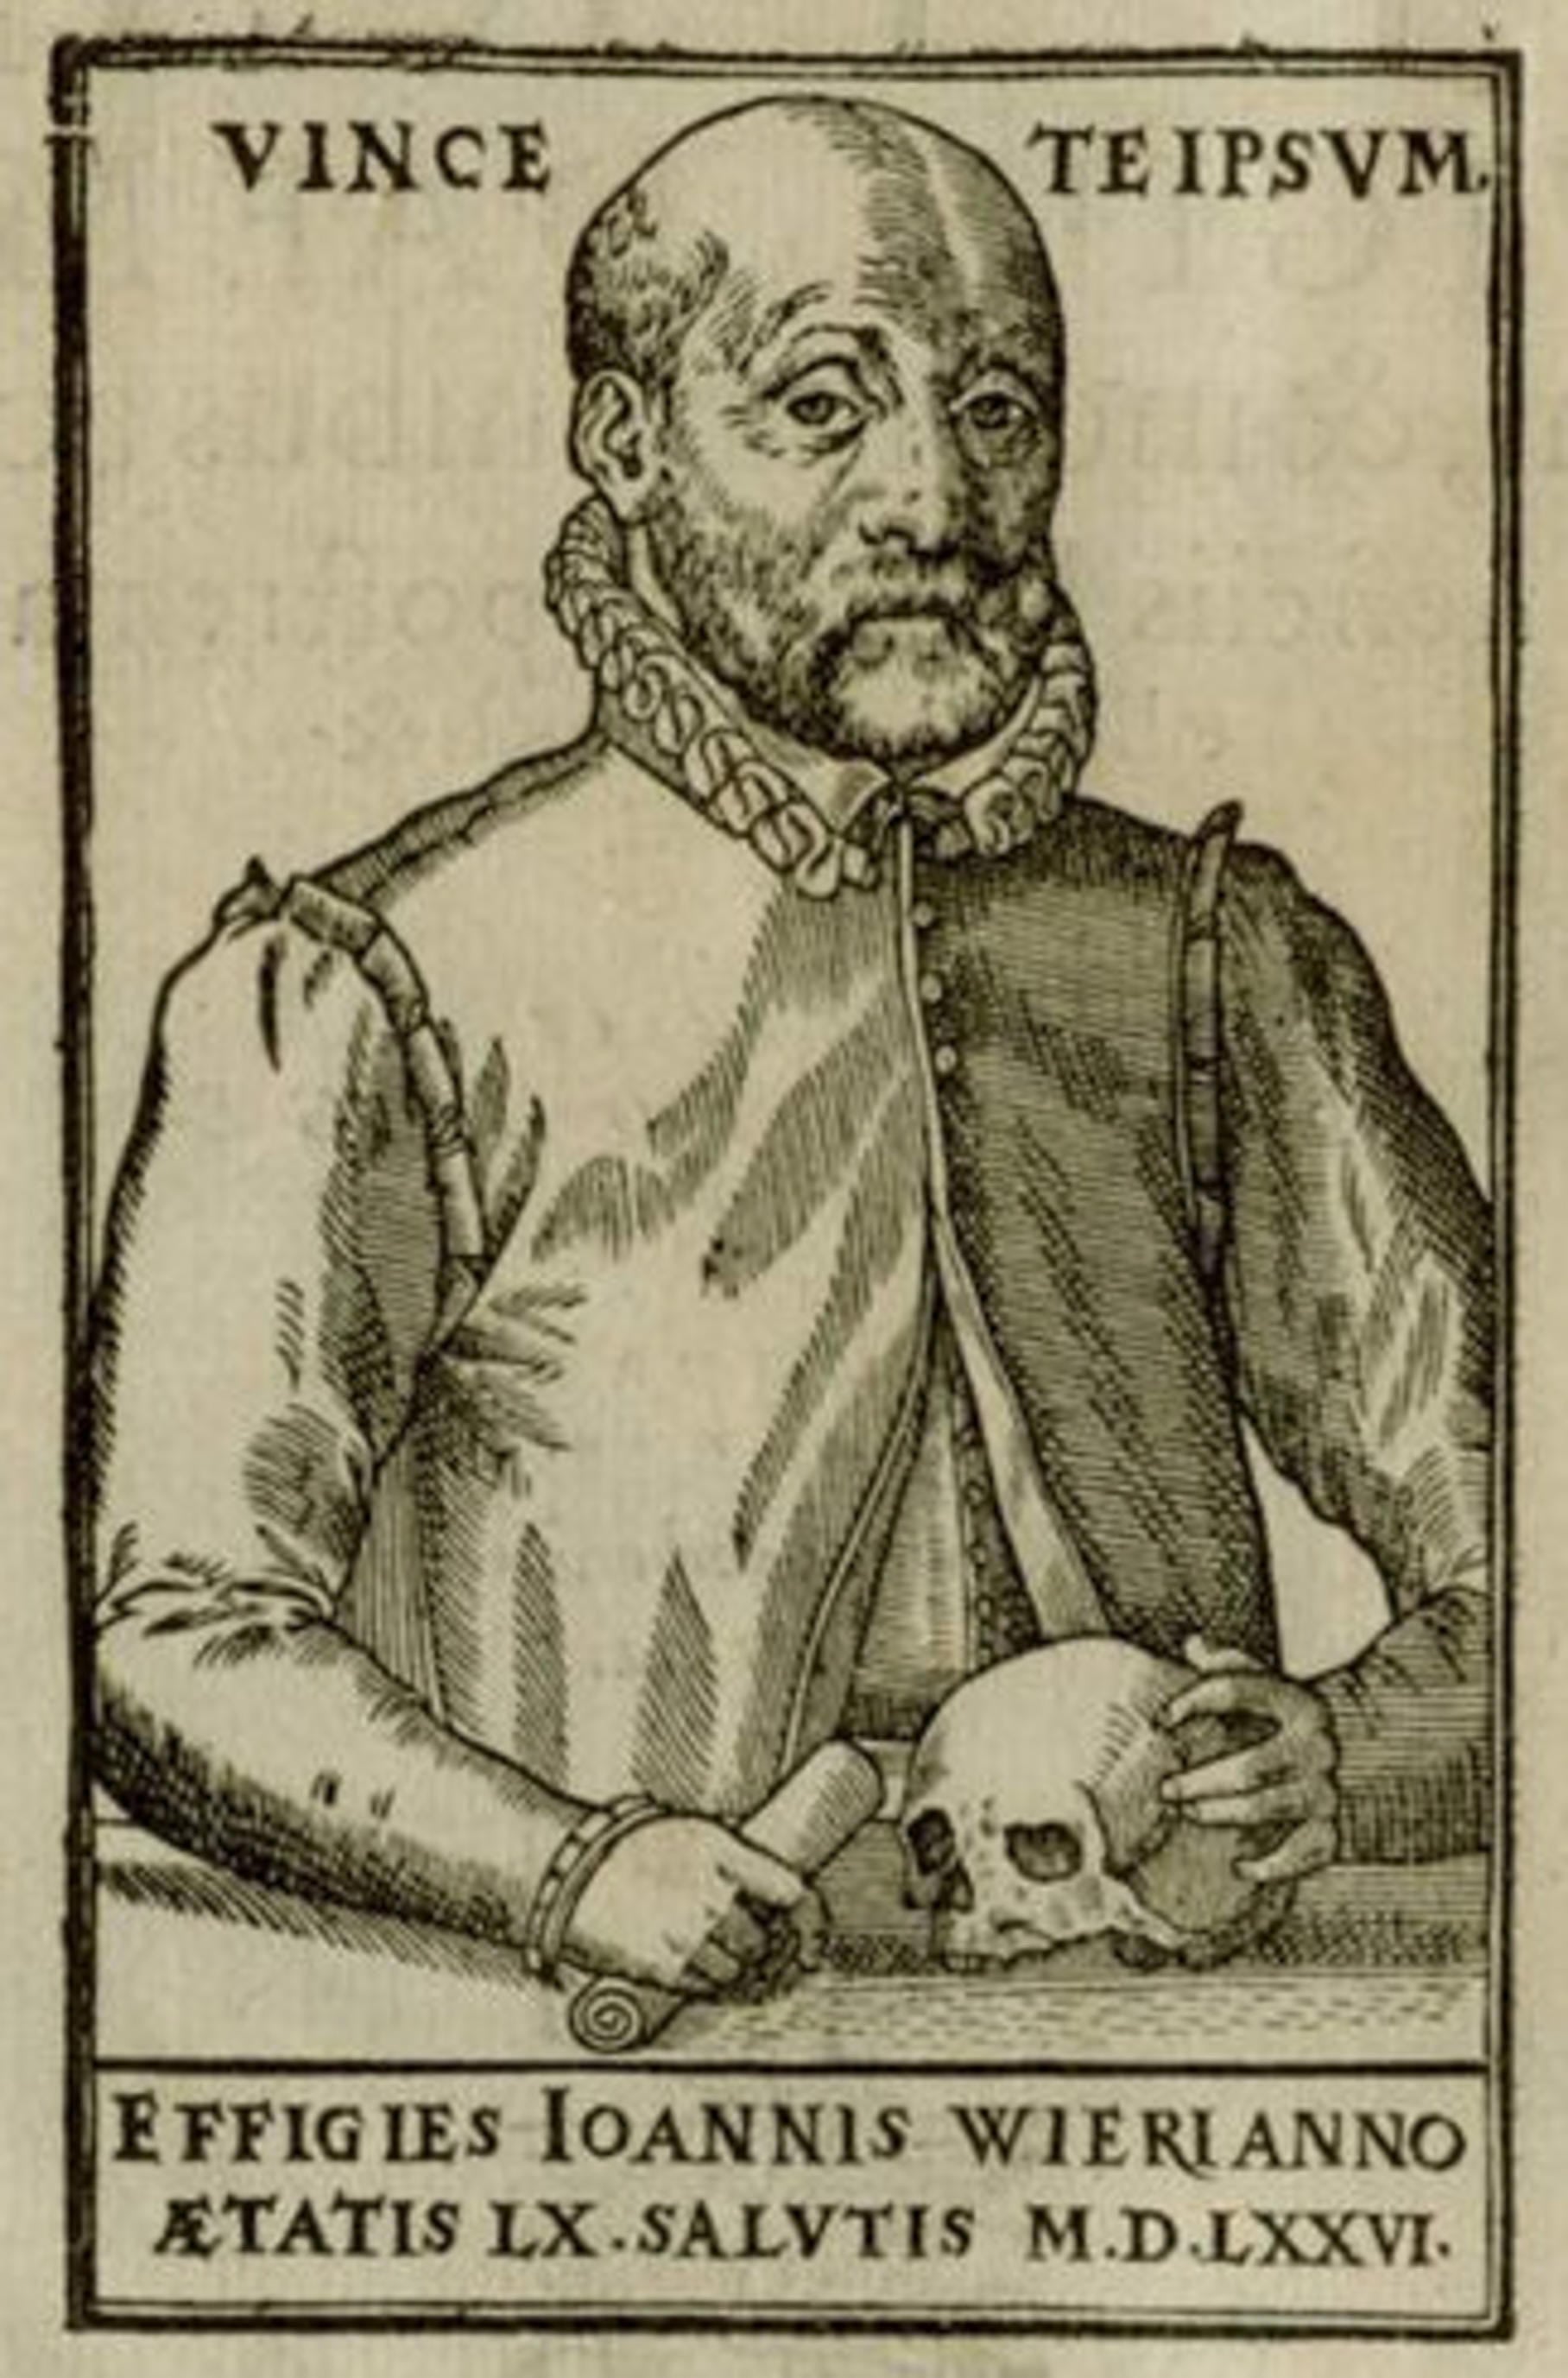 Ảnh 1: Chân dung Johann Weyer được in khắc kẽm năm 1577. Minh họa được lấy từ cuốn sách “De lamiis liber” của ông bàn luận về phù thủy và về lối nhịn ăn sai lạc. Nguồn: Spektrum.